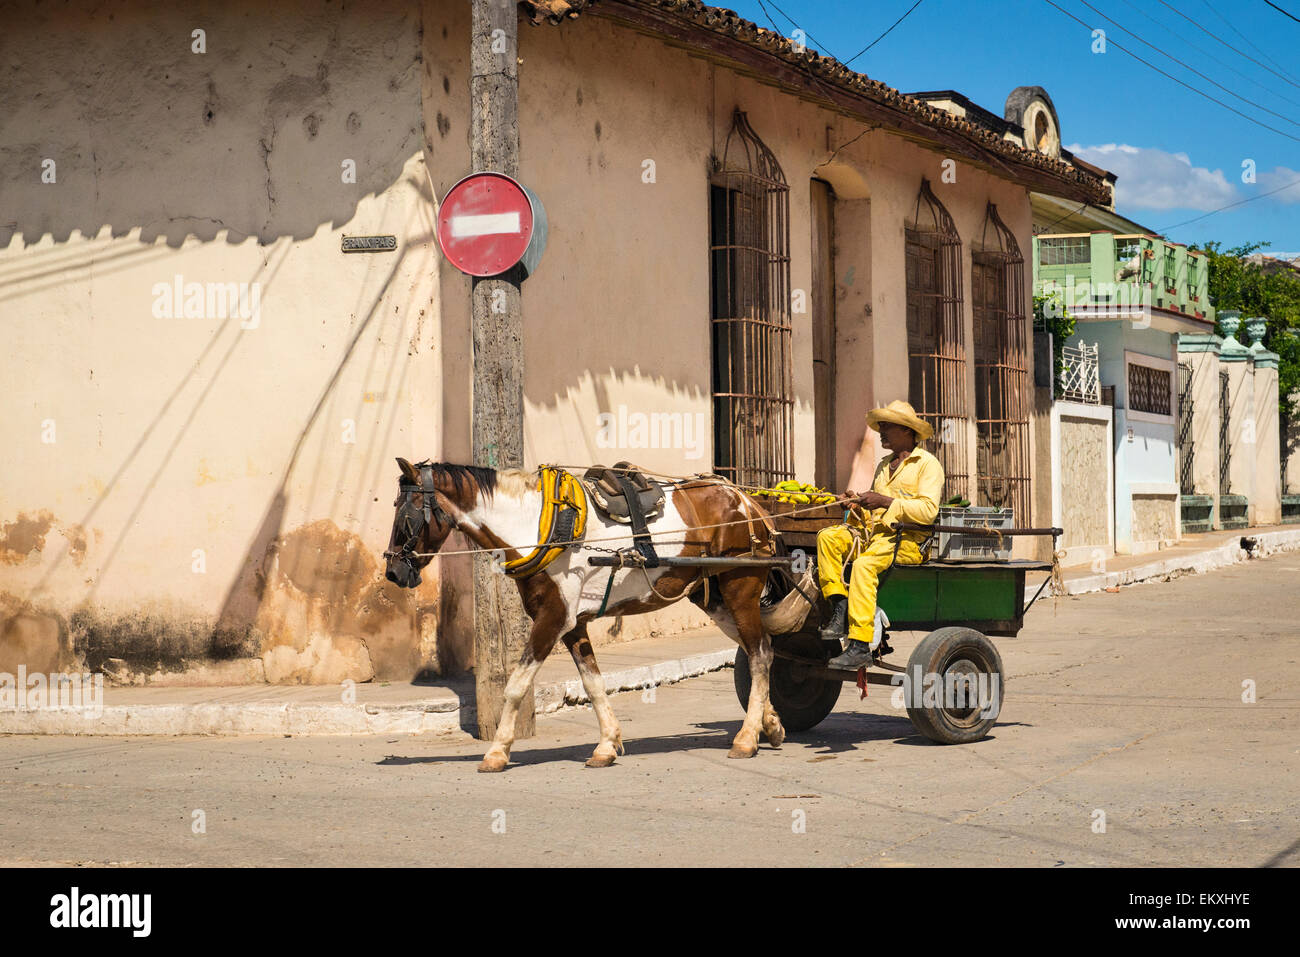 Kuba-Trinidad typischen Straße Straße Szene Pferd & Warenkorb Zweirad Fahrer Landwirt? gelbe Bananen Stockfoto